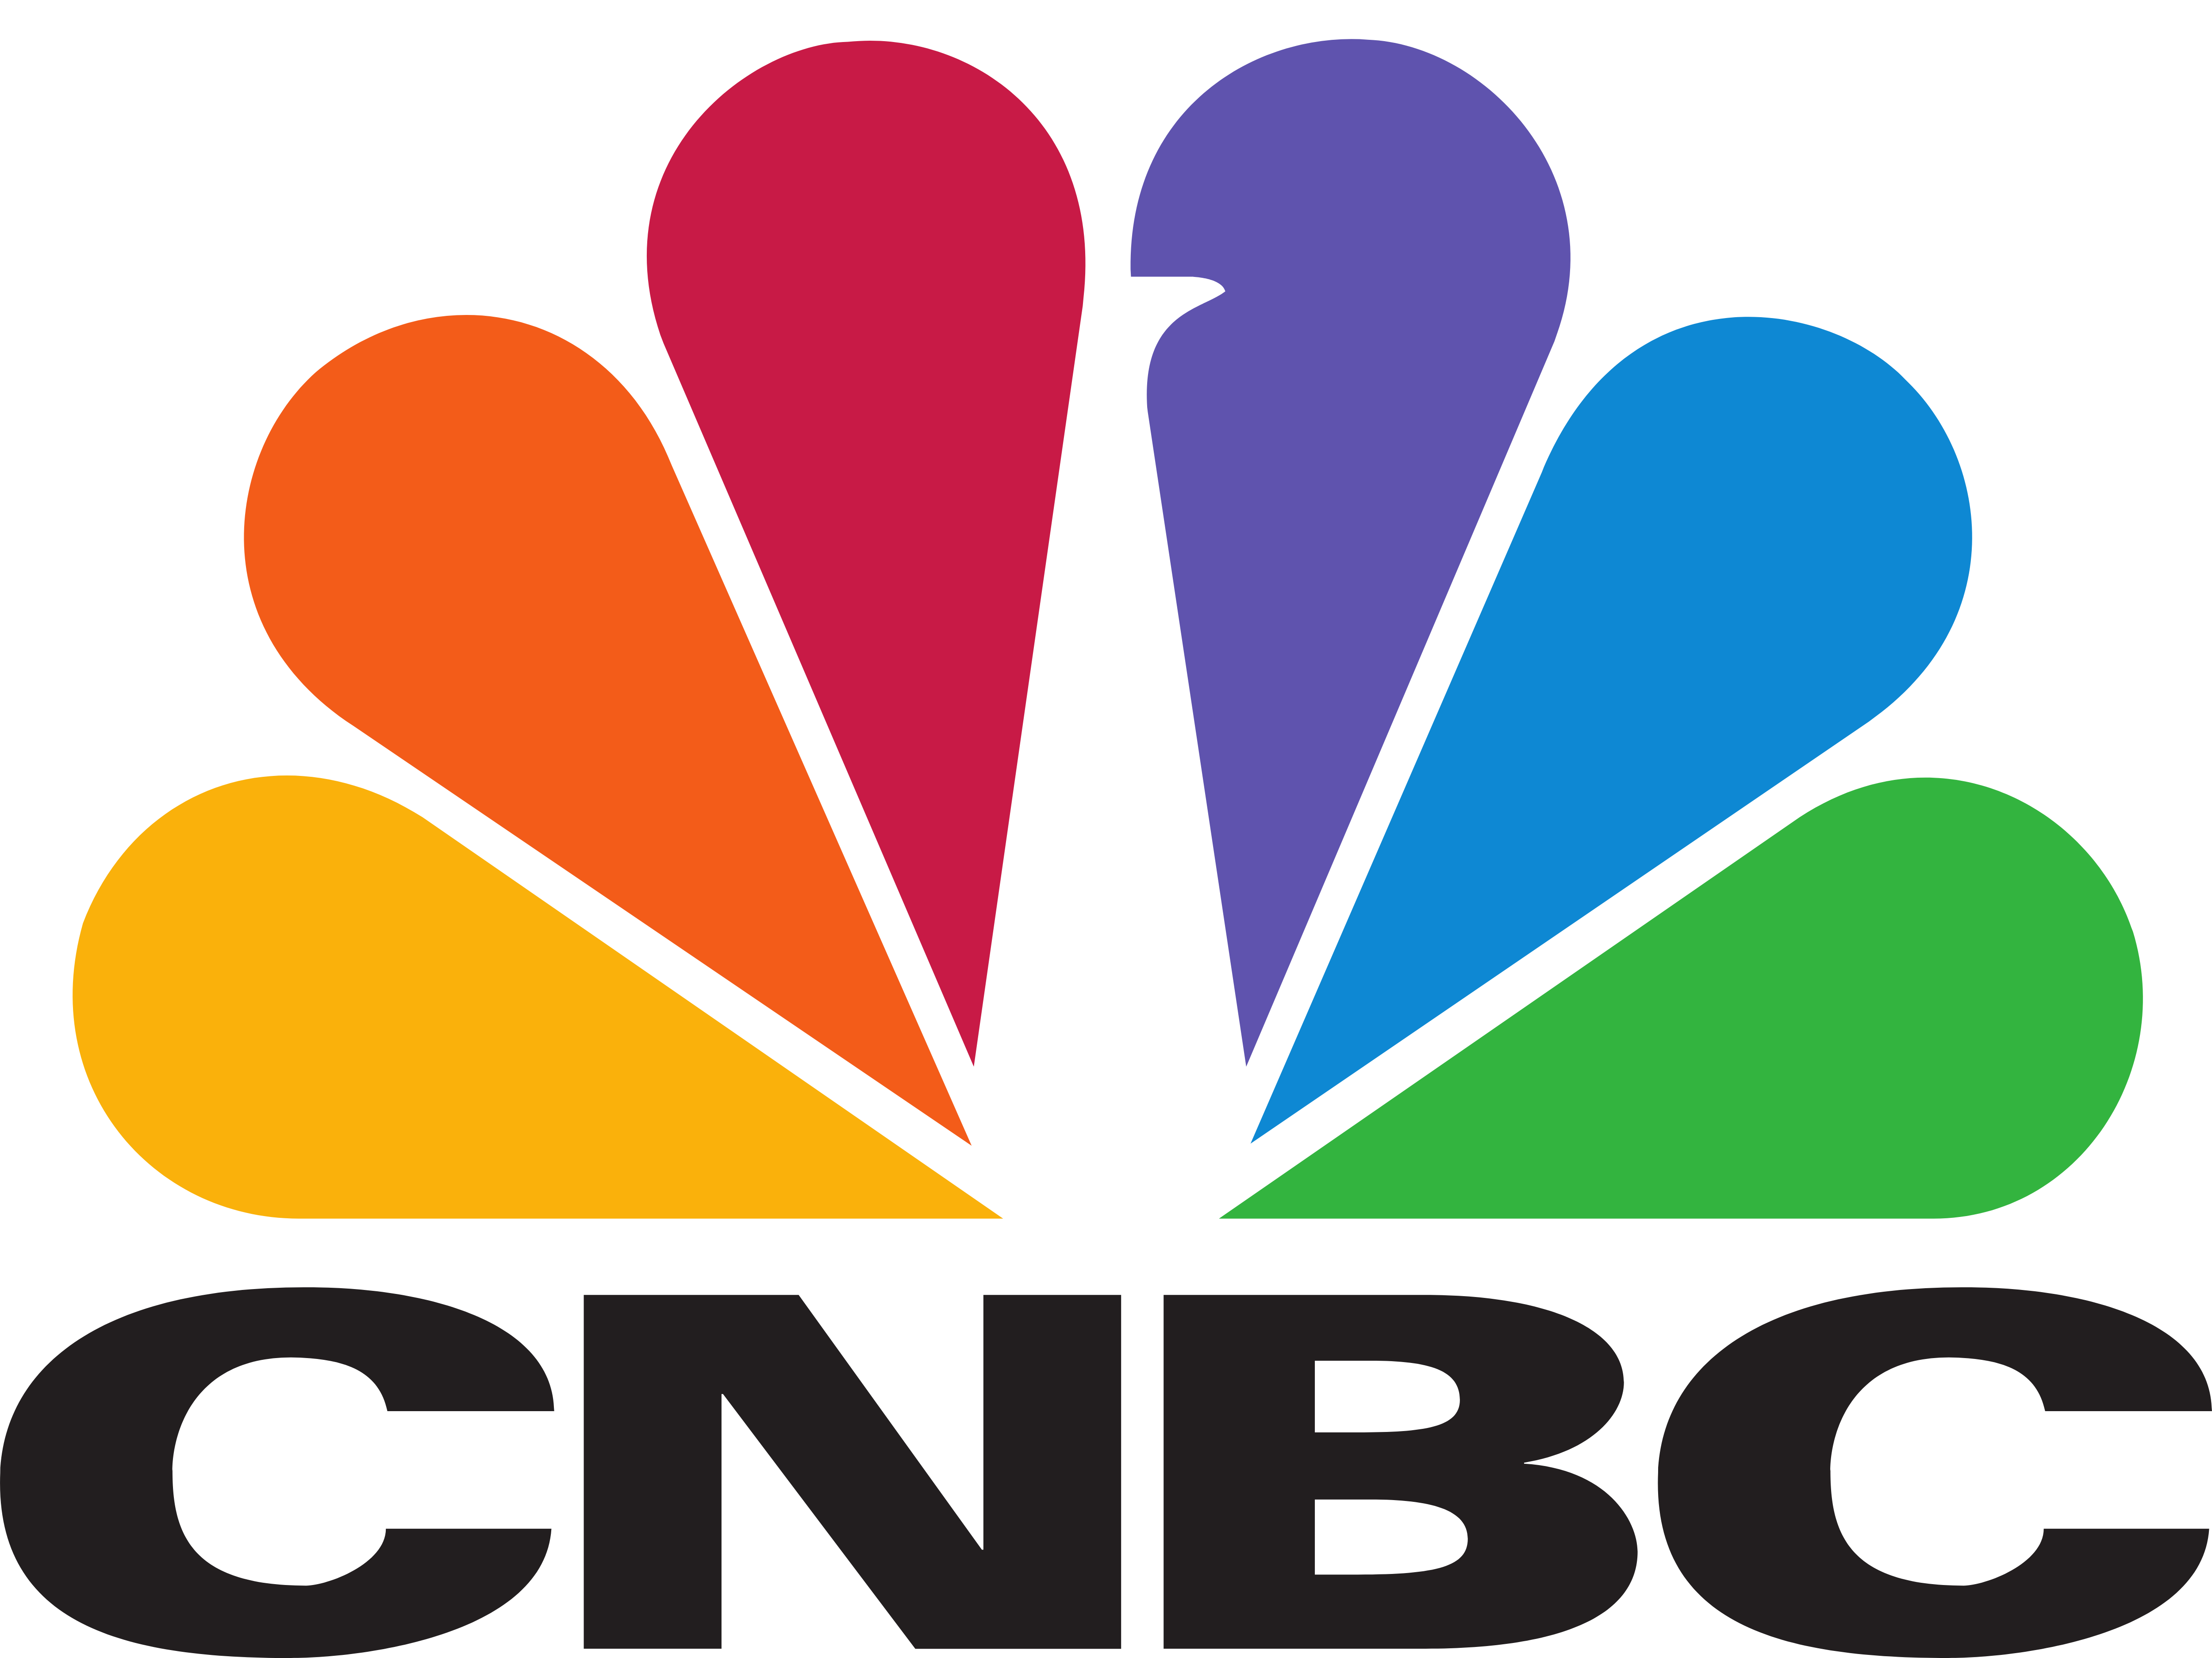 CNBC – pobieranie logo